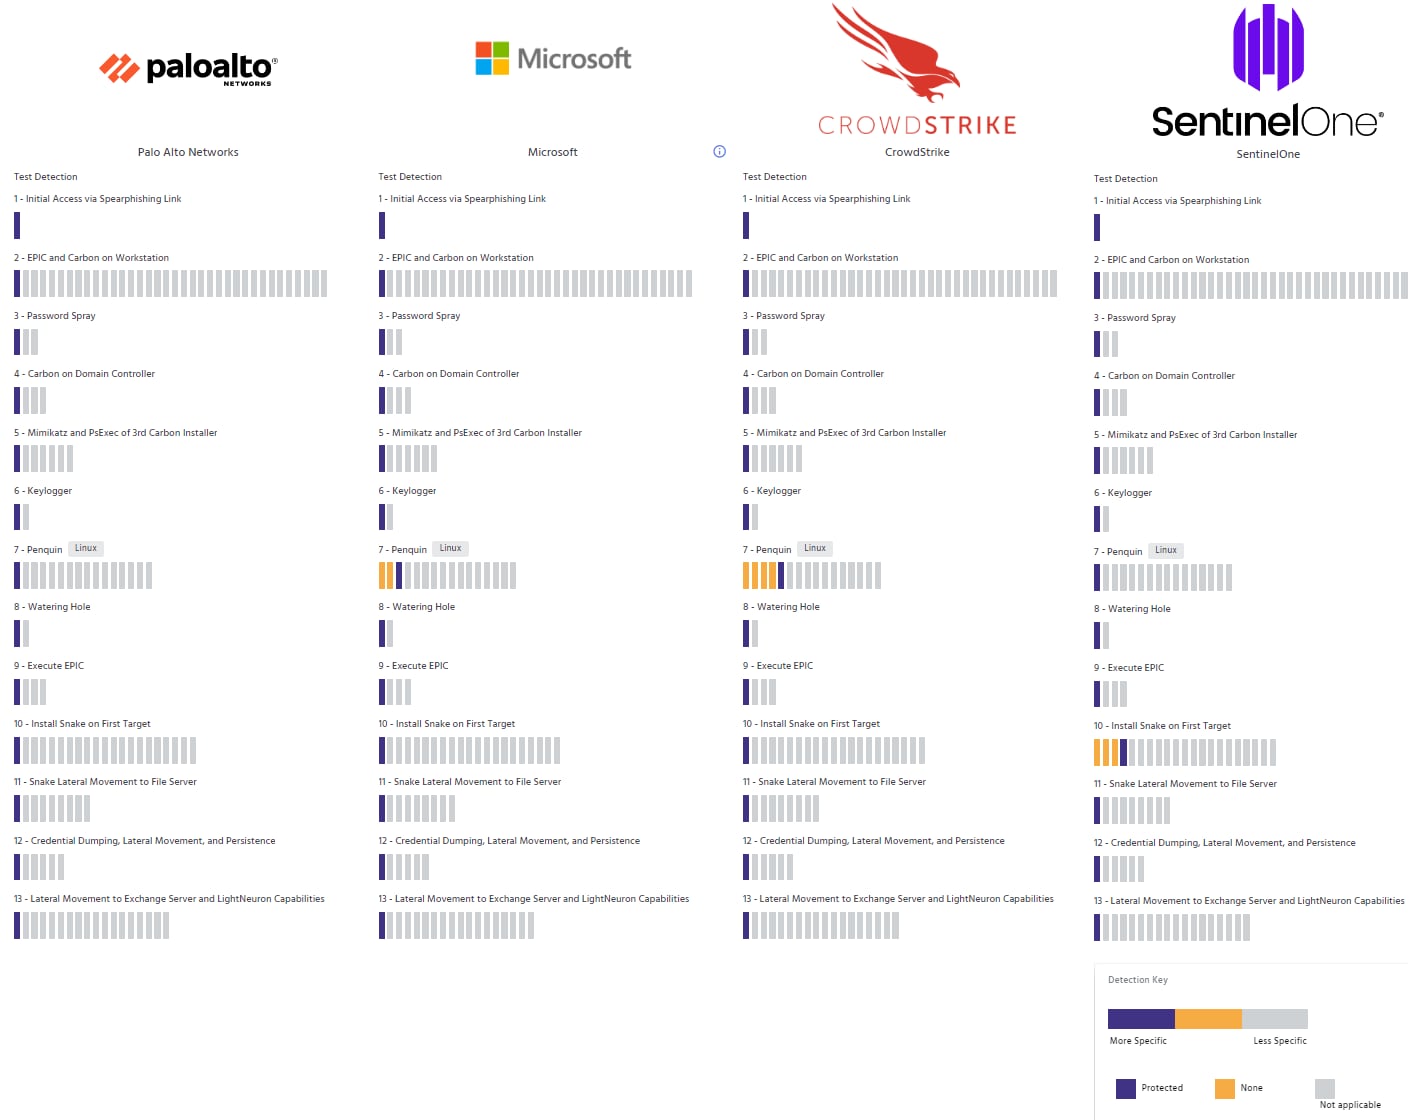 Resultados da Avaliação MITRE Engenuity ATT&CK, que mostra a Palo Alto Networks, Microsoft, CrowdStrike e Sentinel One.